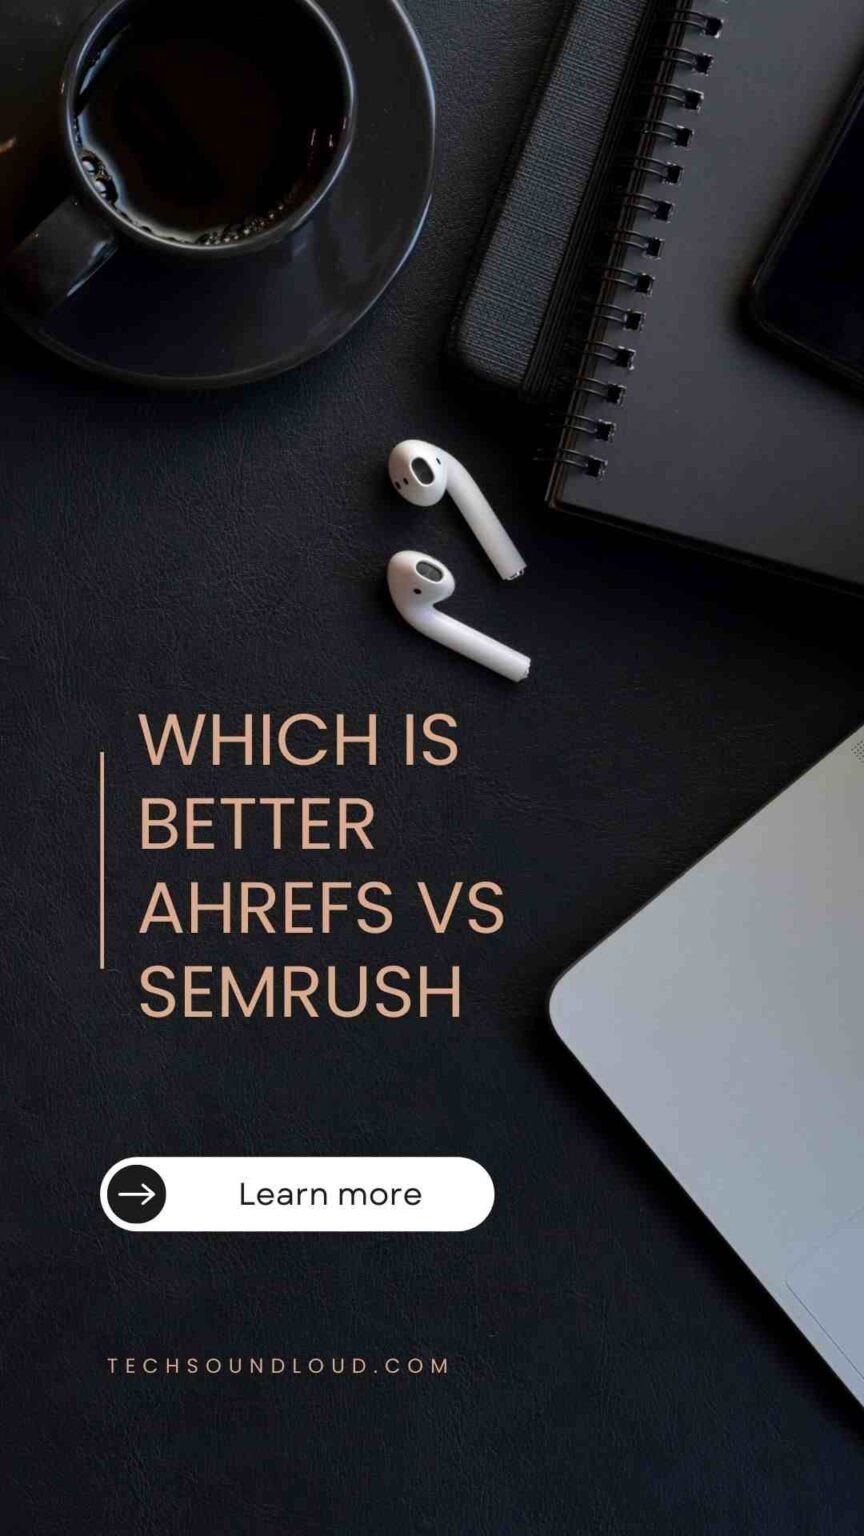 semrush vs ahrefs